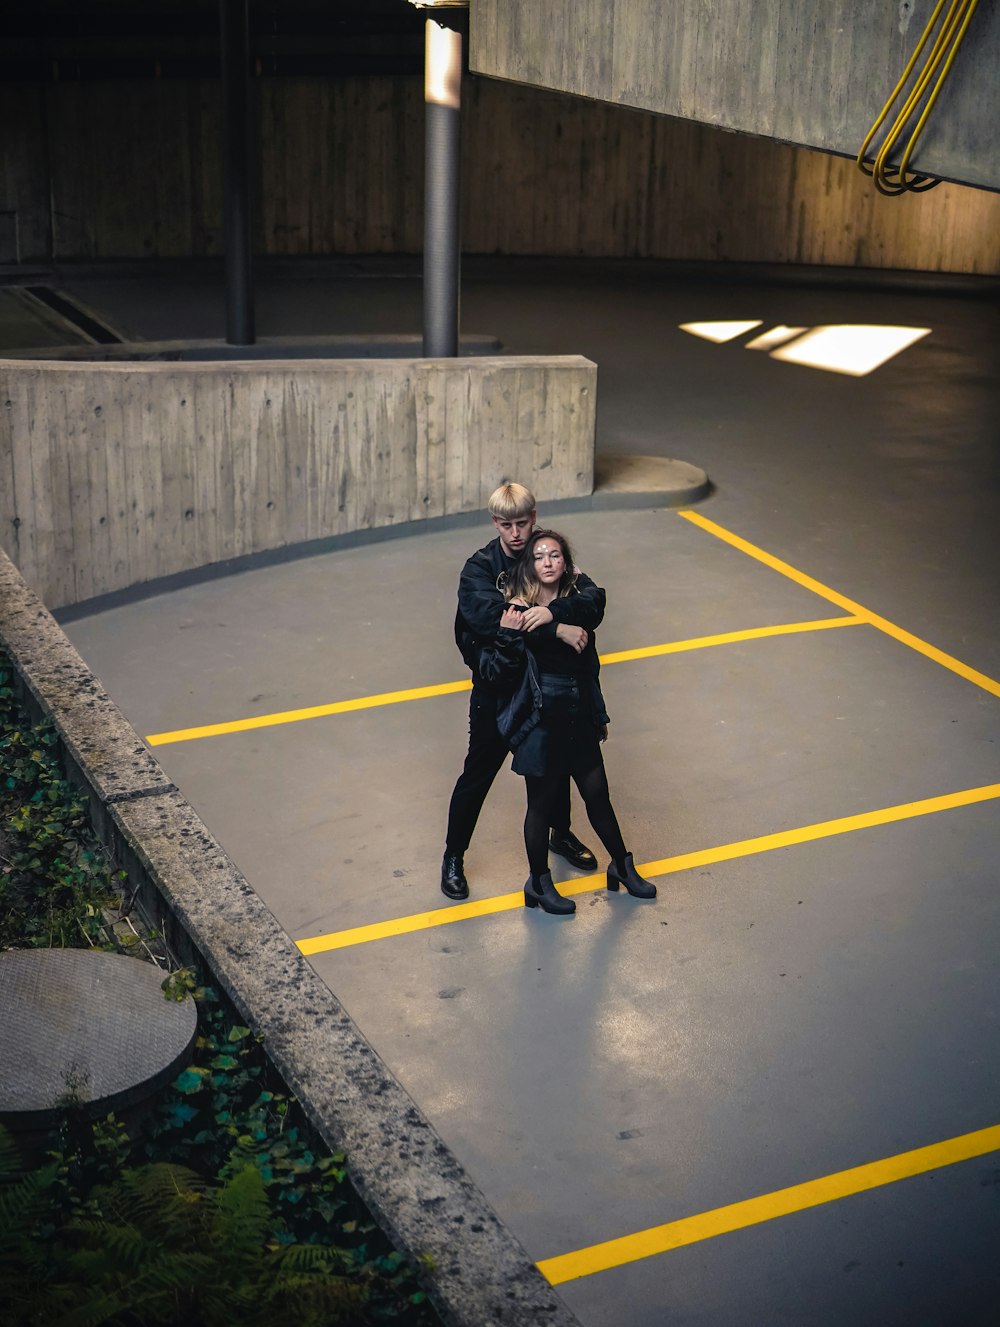 Mann im Begriff, Frau zu umarmen, die auf gelb-schwarzem Parkplatz steht